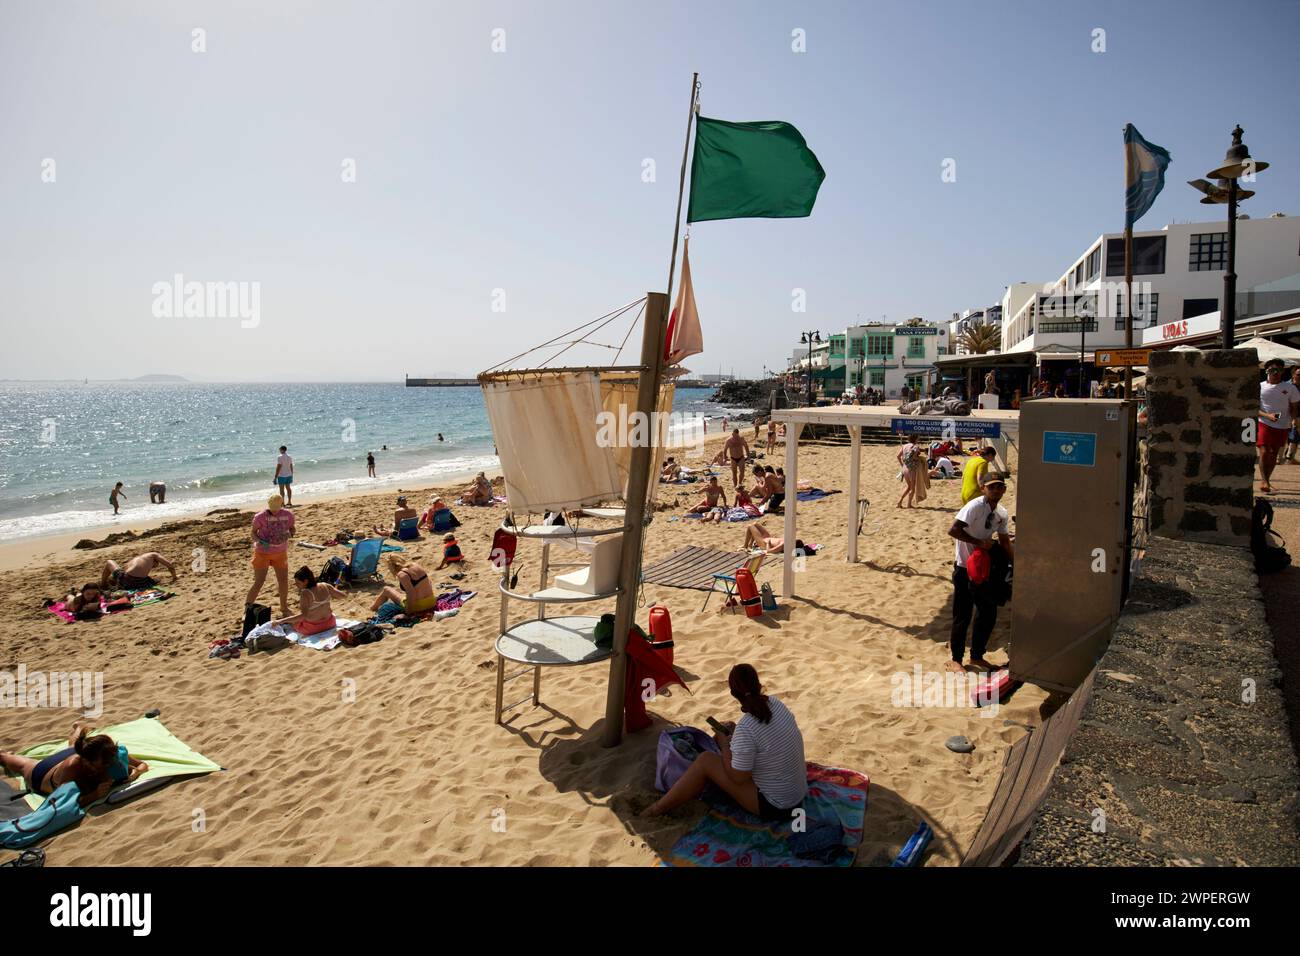 Drapeau vert pour nager en toute sécurité avec un sauveteur en service à la populaire destination soleil d'hiver playa blanca Beach, Lanzarote, Îles Canaries, espagne Banque D'Images